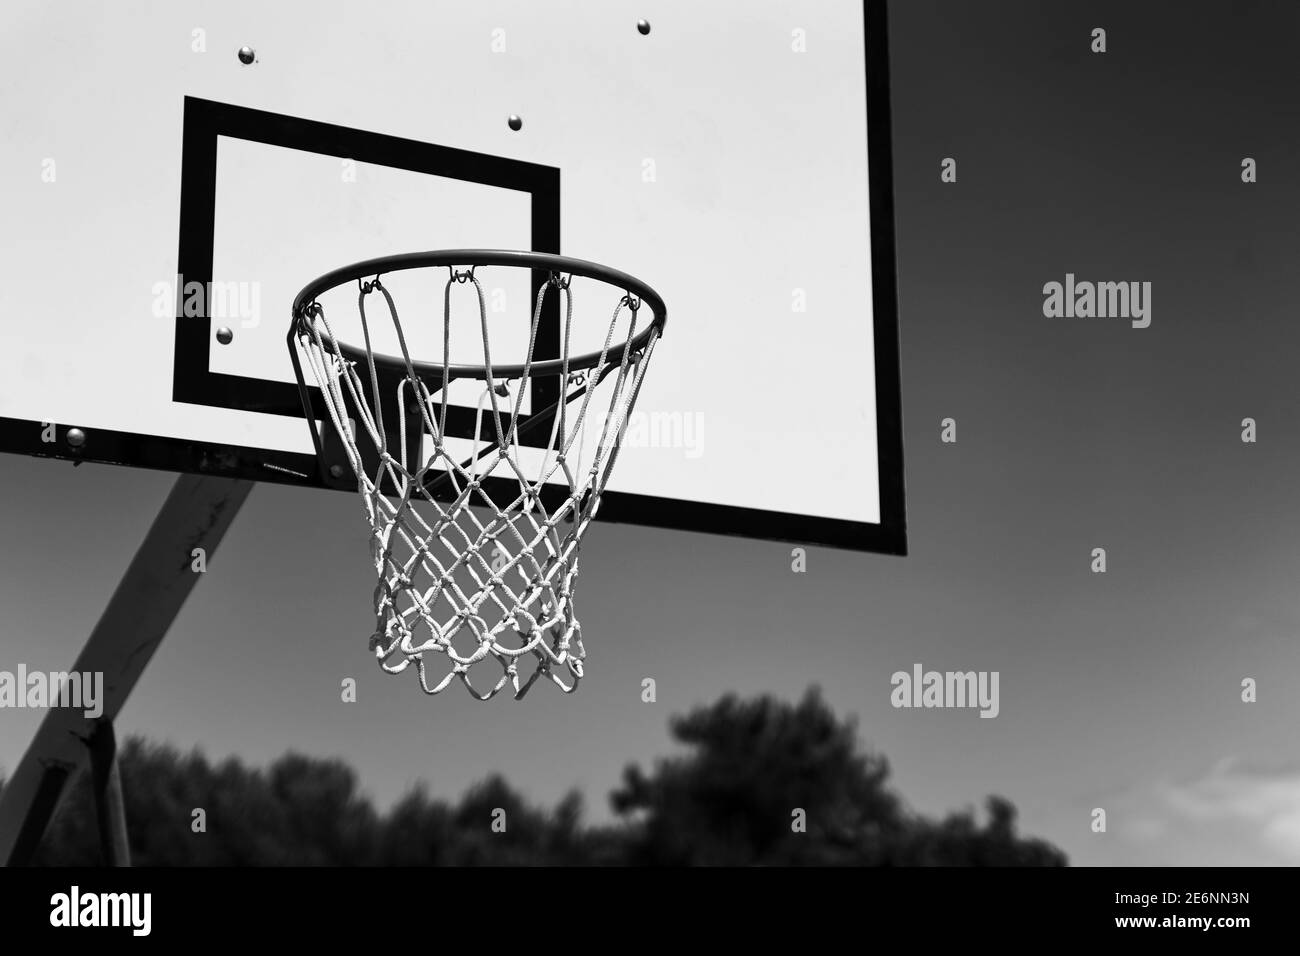 Outdoor Basketballkorb oder Tor auf Himmel Hintergrund in schwarz und weiß  Stockfotografie - Alamy